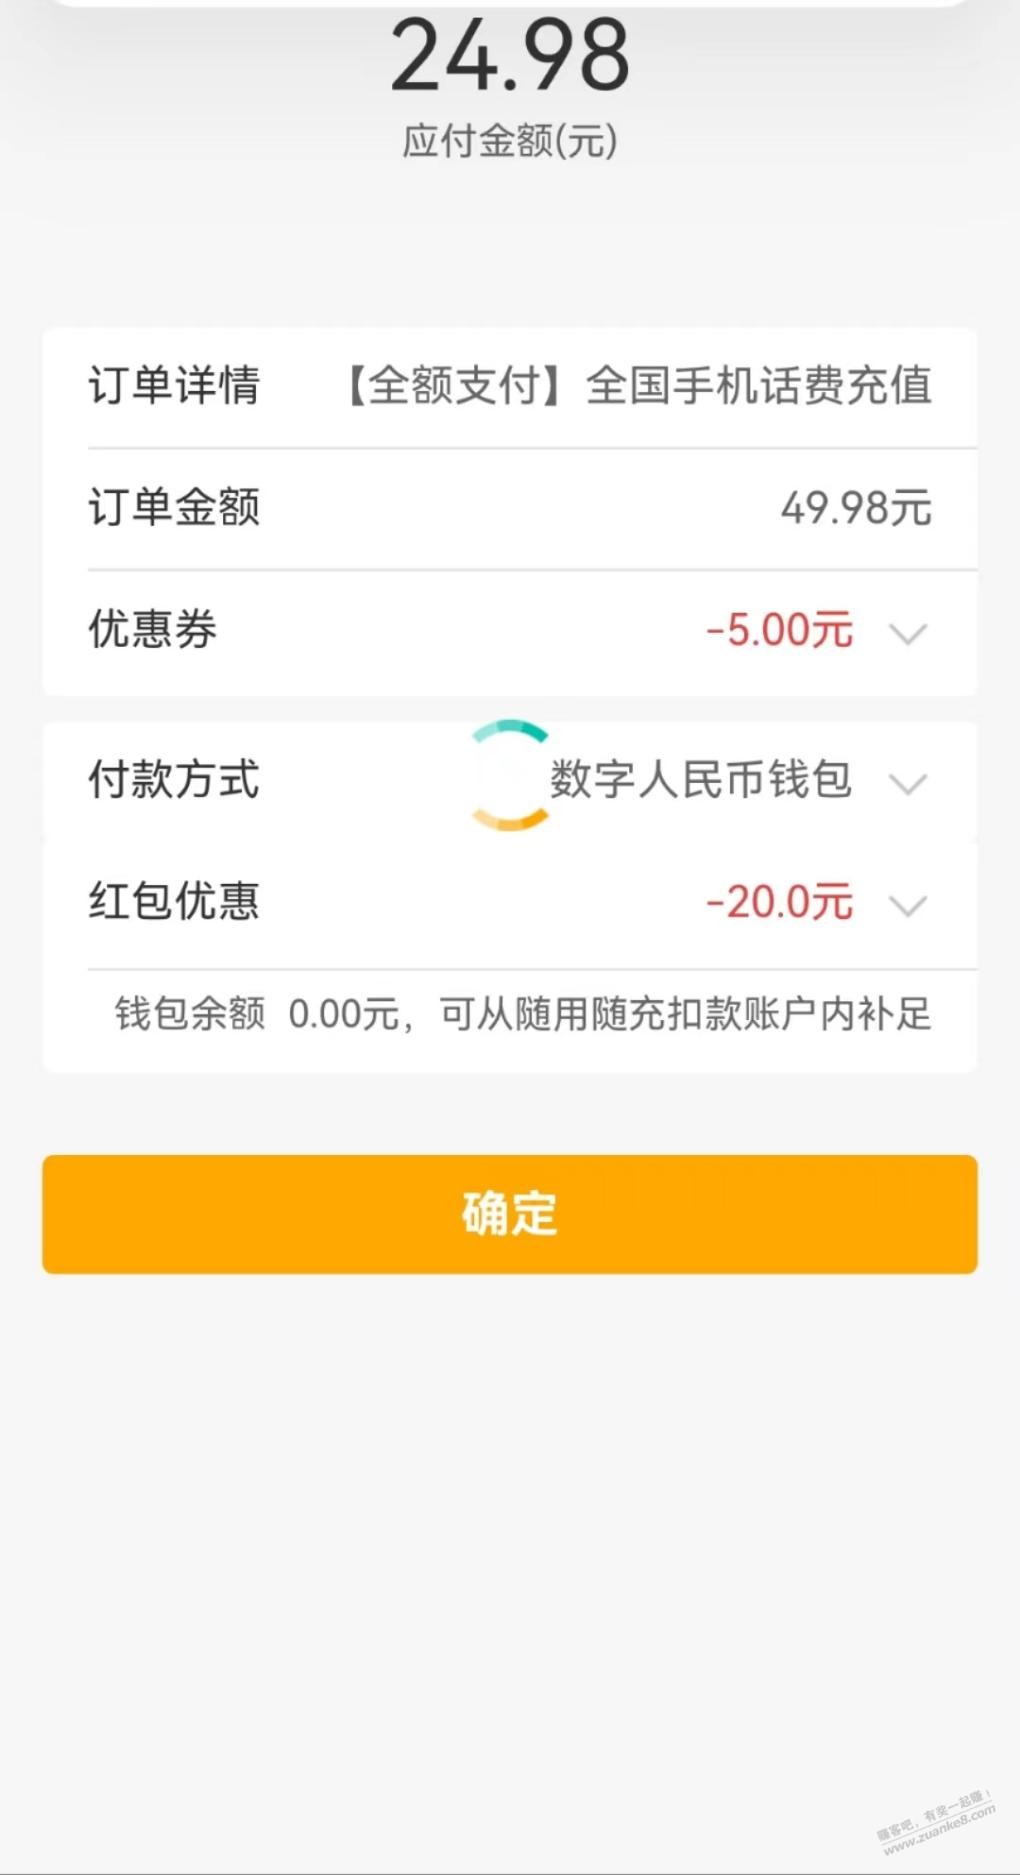 农行搜 数字人民币-25冲50话费-惠小助(52huixz.com)